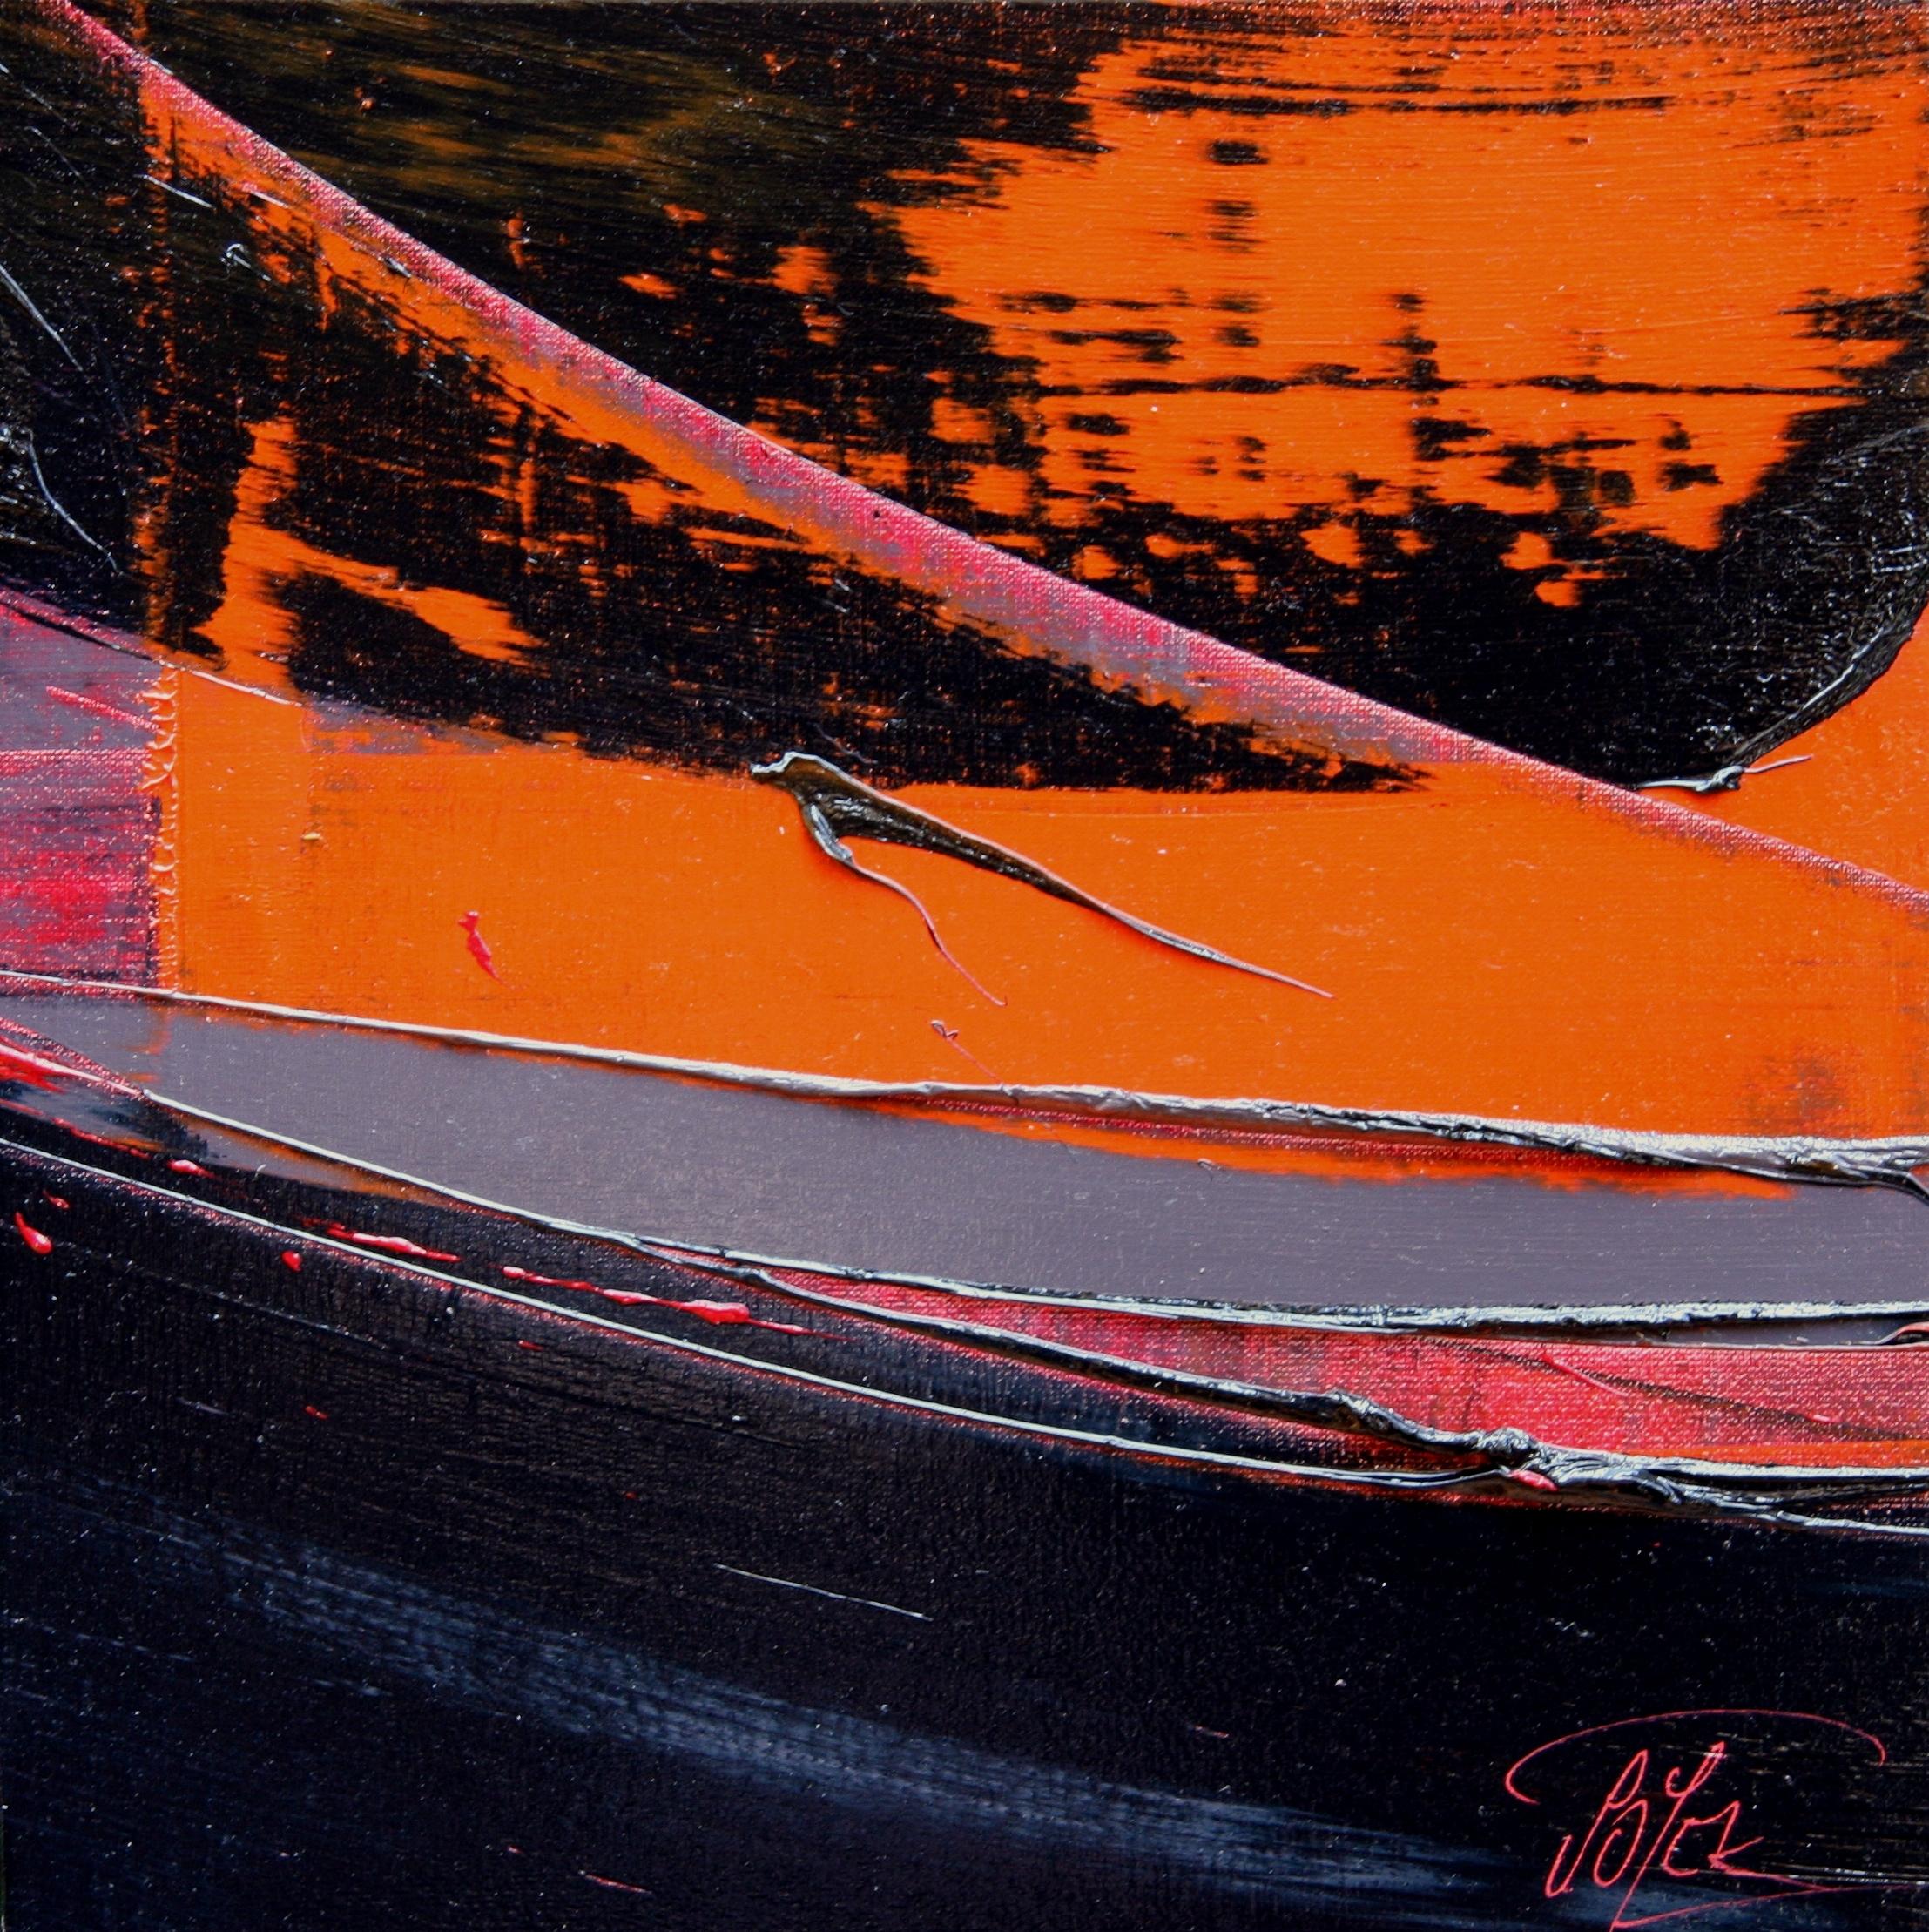  Dieses Kunstwerk zeigt einen orangefarbenen Hintergrund, der unten von einer großen schwarzen Fläche und oben von einer gemusterten schwarzen Fläche bedeckt ist, die ihrerseits diagonal gestrichen ist, um die Leinwand teilweise freizulegen. Ein